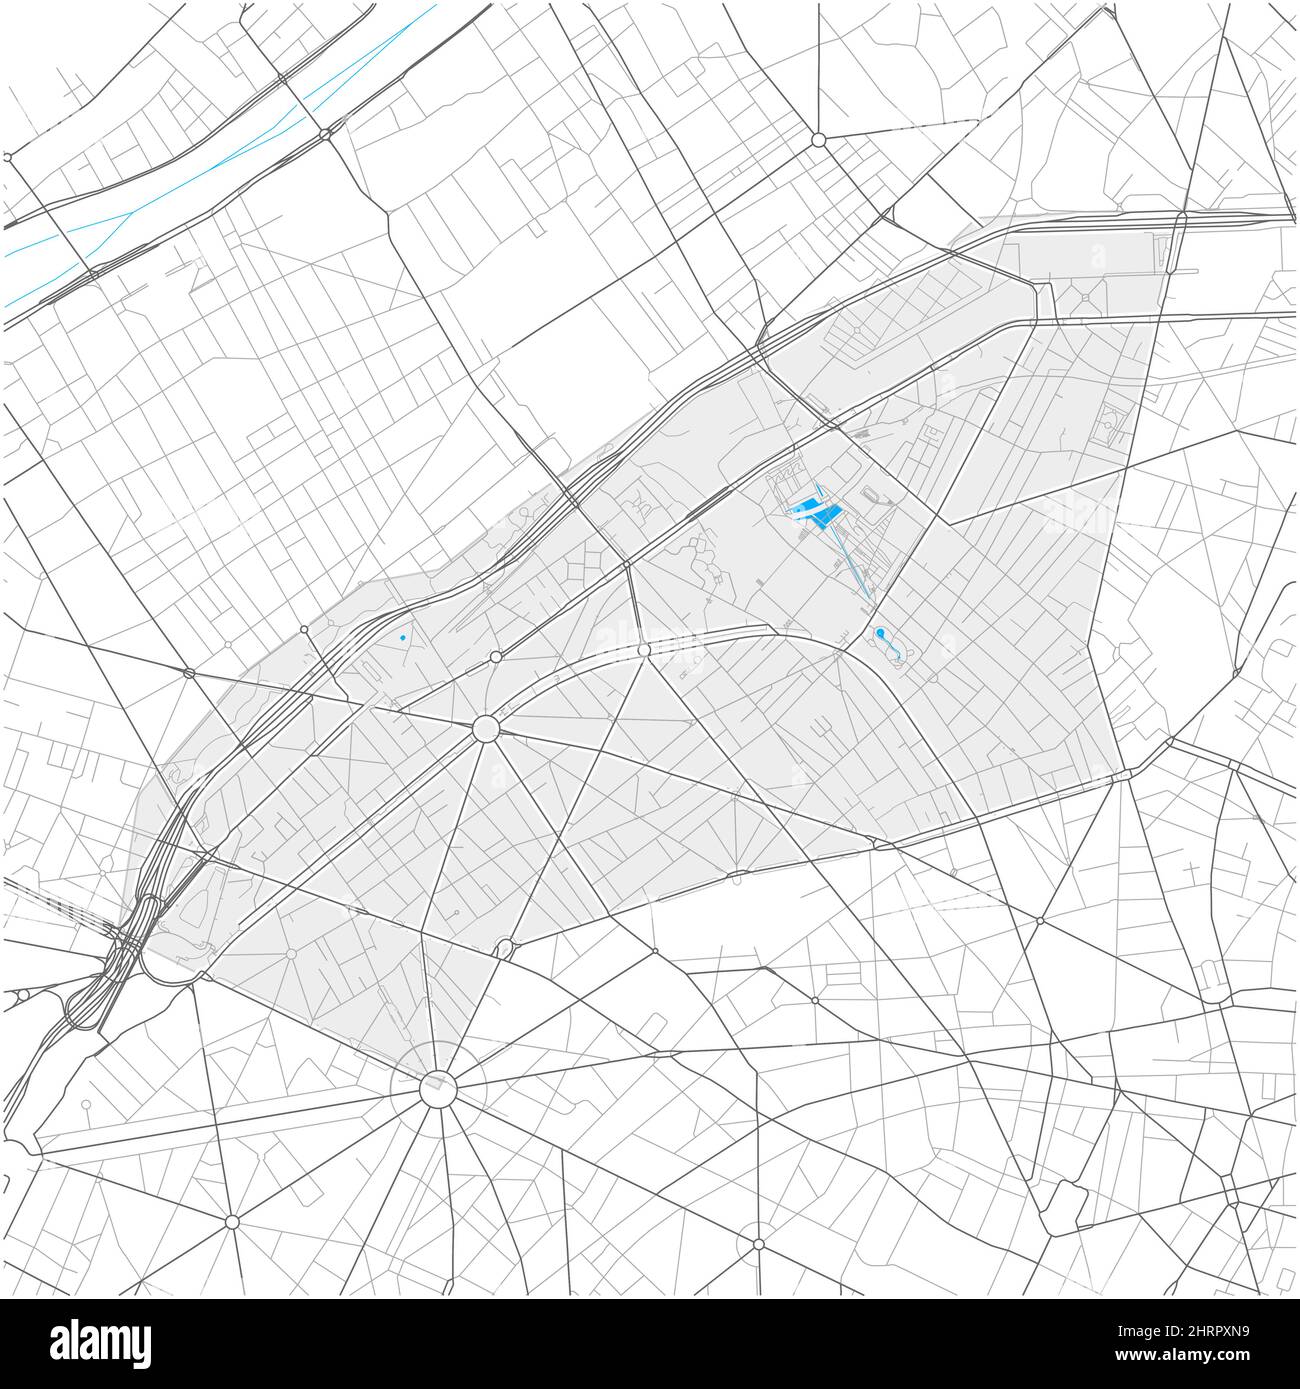 17th Arrondissement, Parigi, FRANCIA, mappa vettoriale ad alto dettaglio con confini della città e percorsi modificabili. Contorni bianchi per le strade principali. Molti percorsi più piccoli. Illustrazione Vettoriale